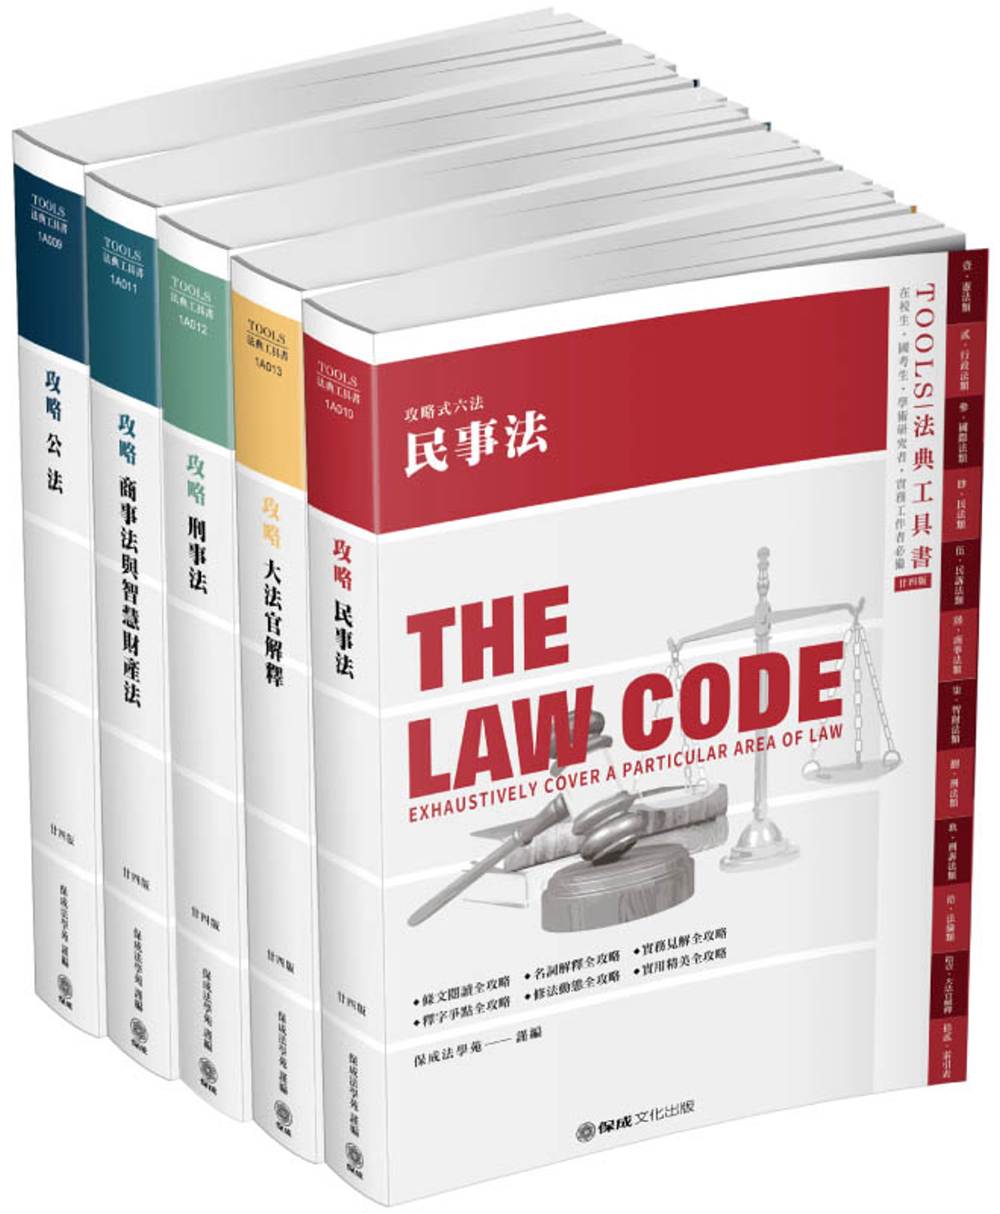 攻略分科六法(五本)：2020法律法典工具書(保成)(24版)